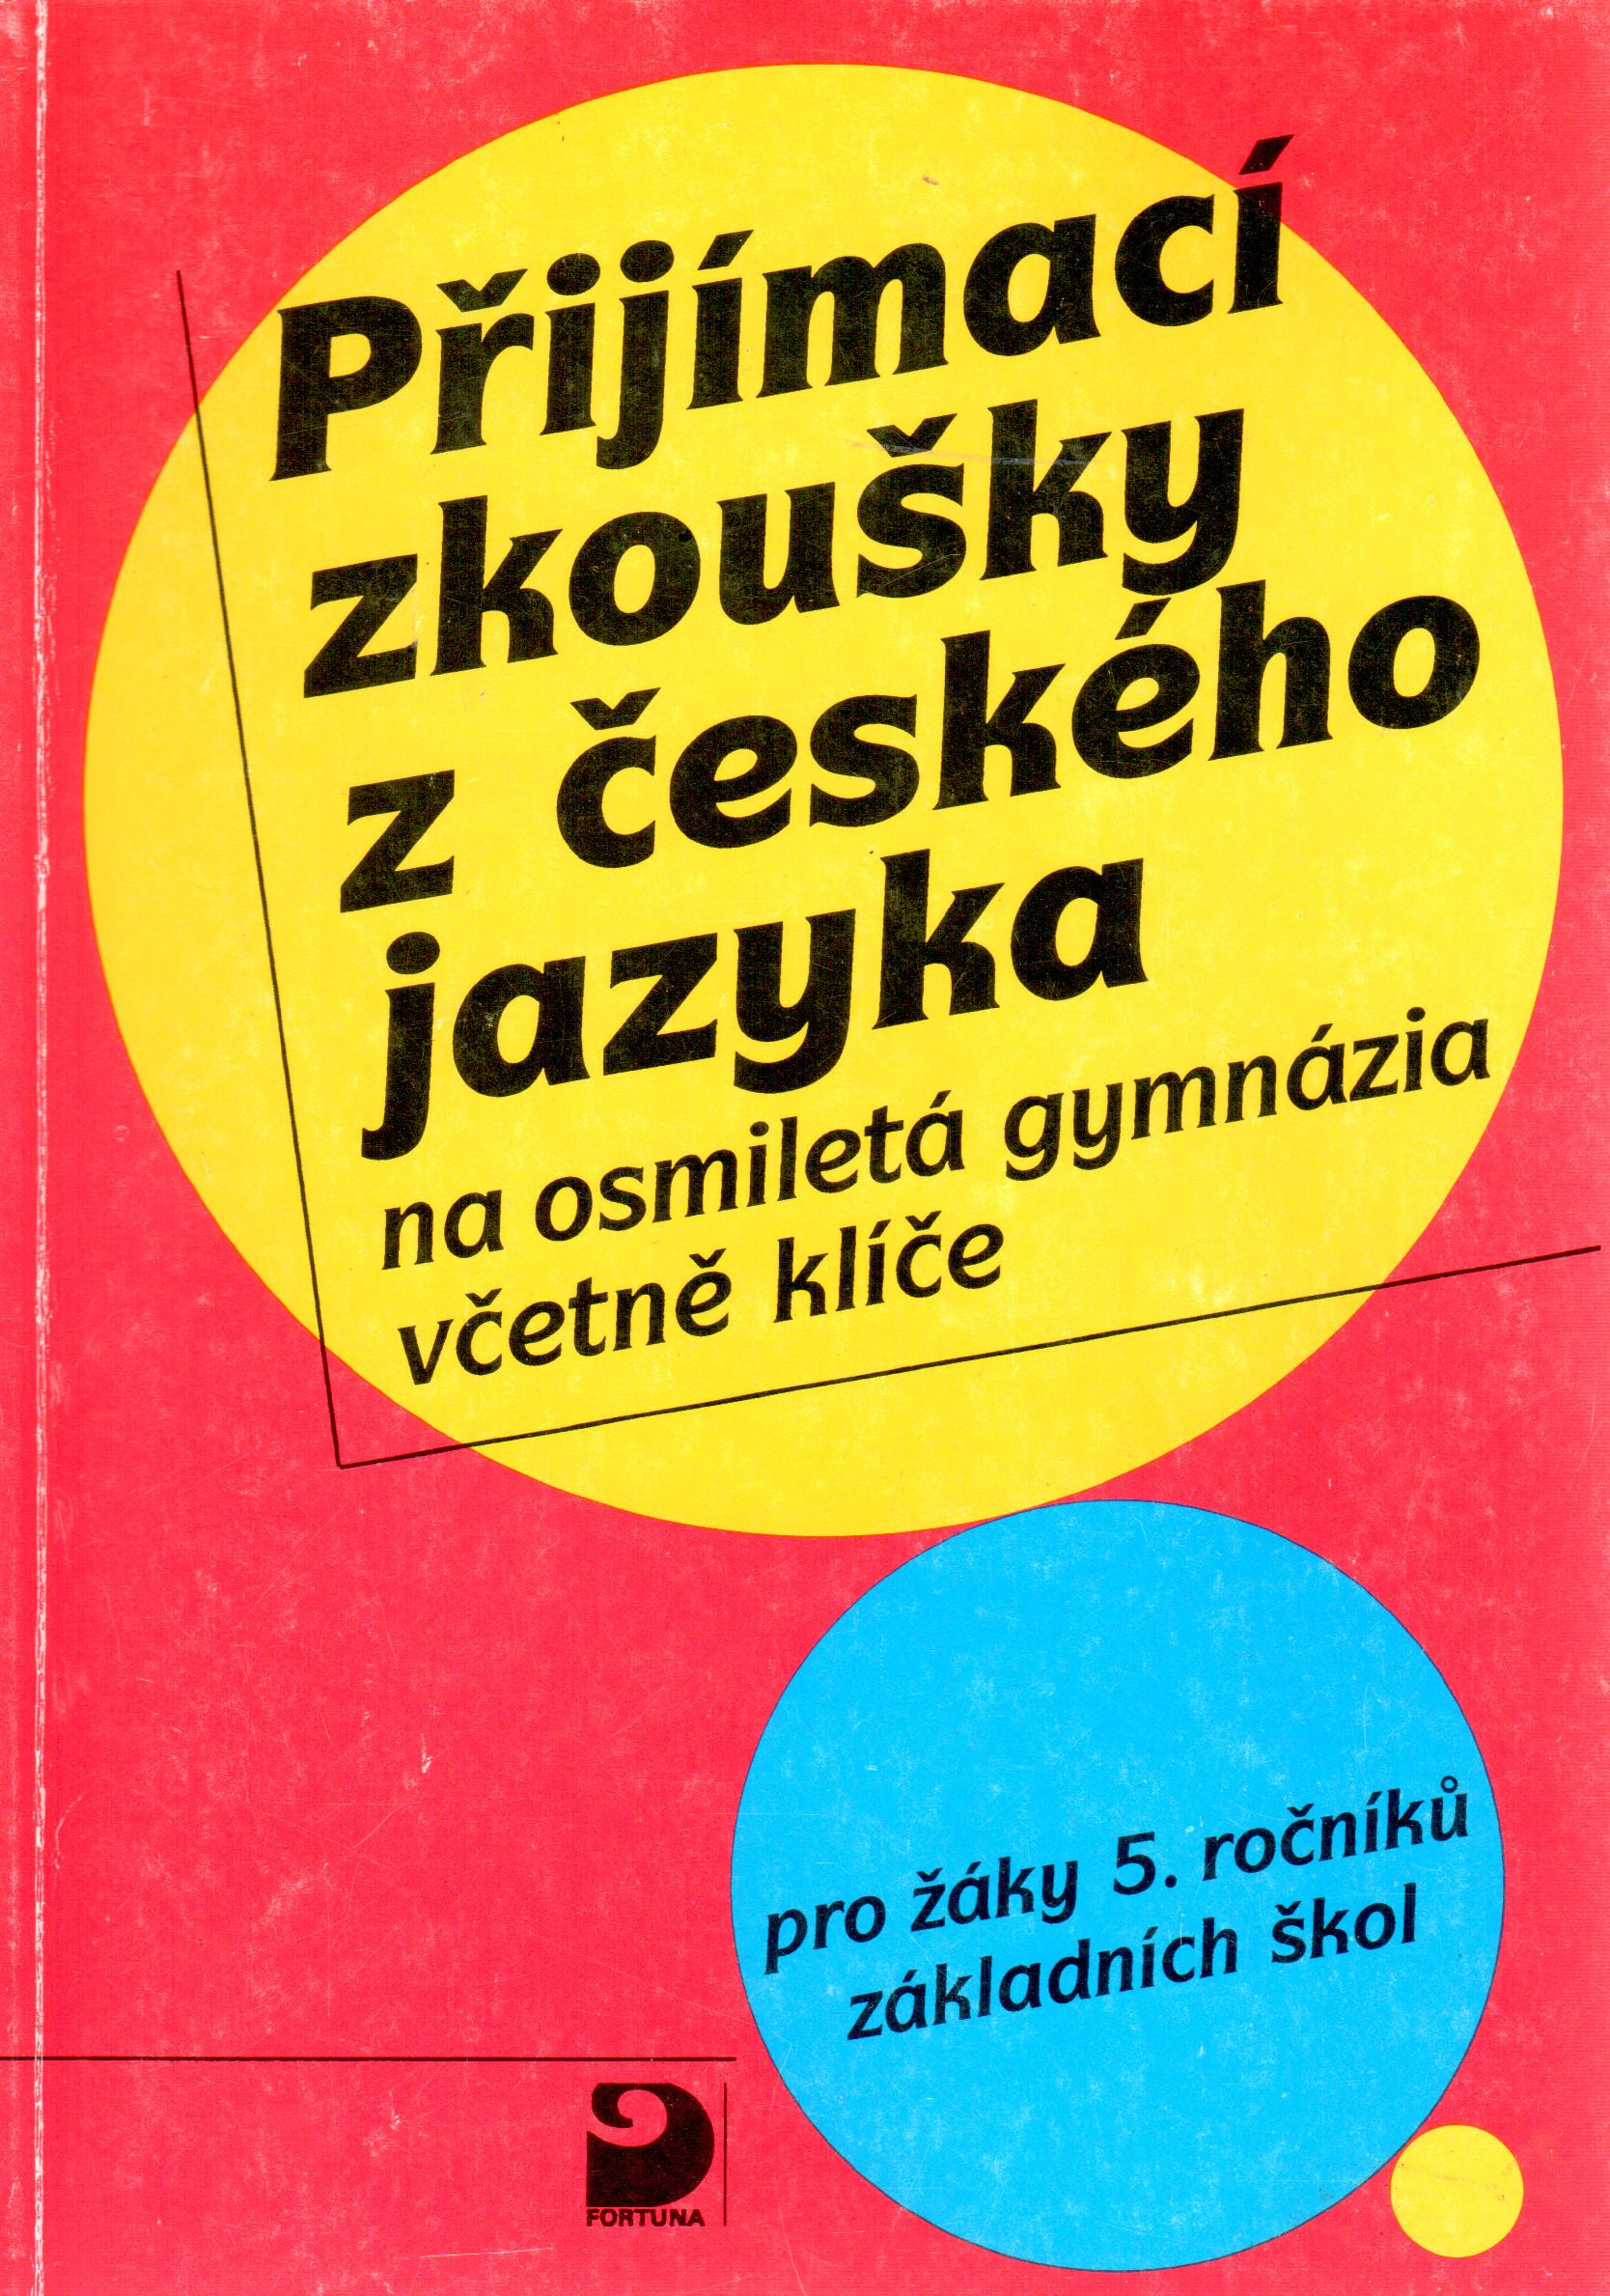 Přijímací zkoušky z českého jazyka na osmiletá gymnázia včetně klíče - Náhled učebnice